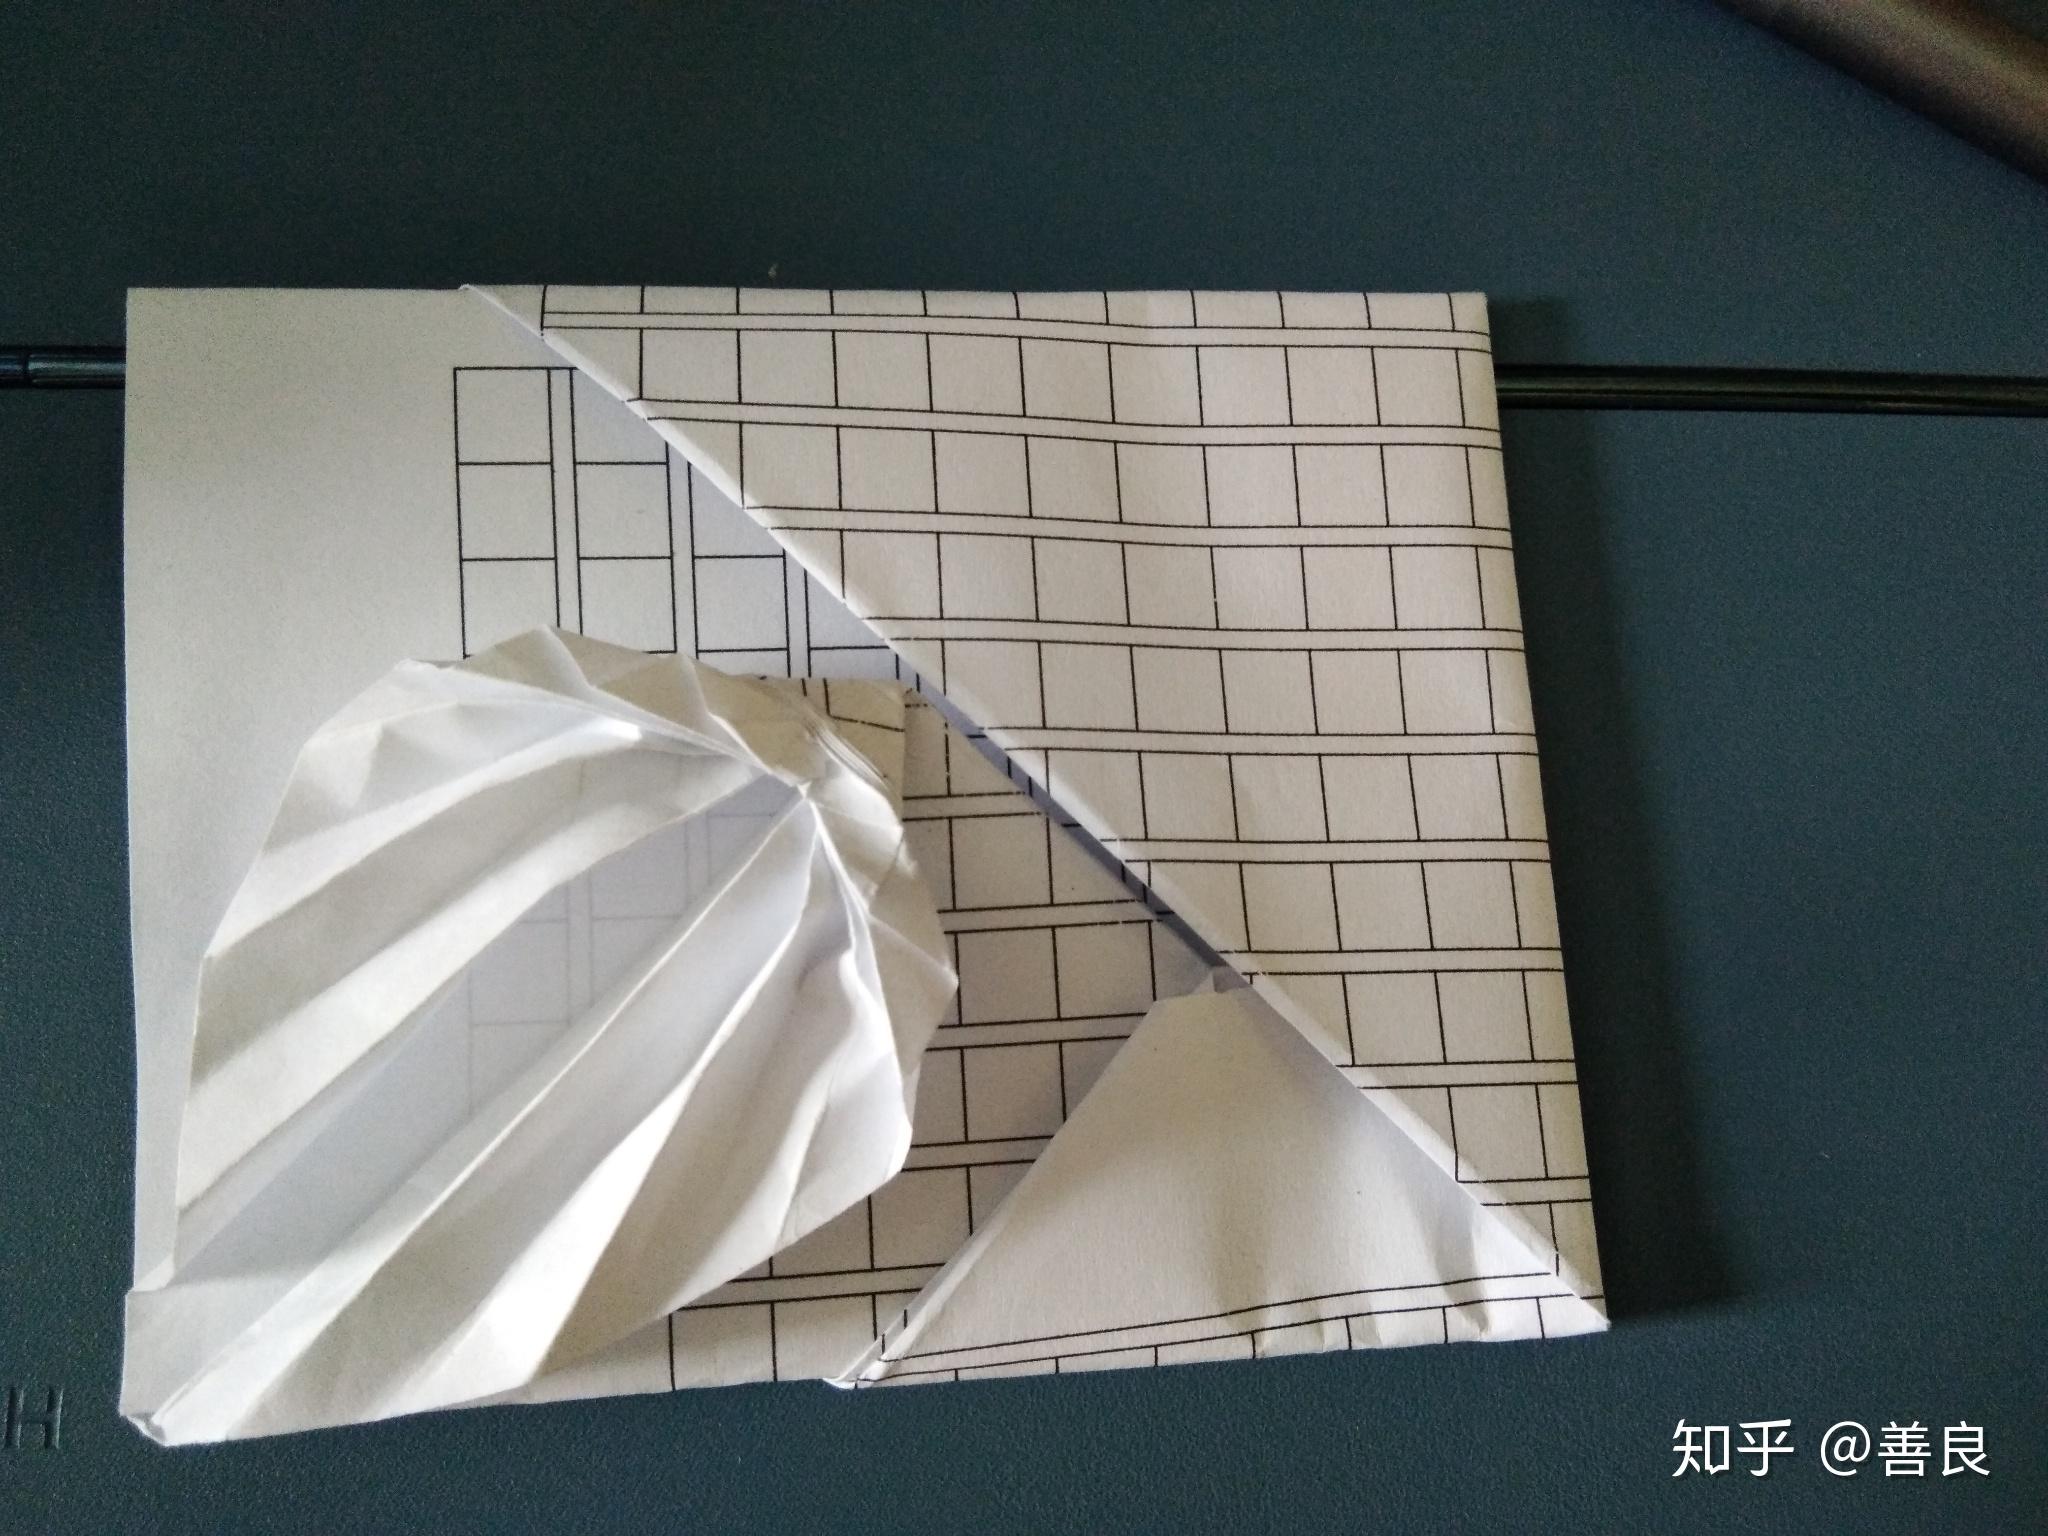 怎么做有趣的手工折纸呢？